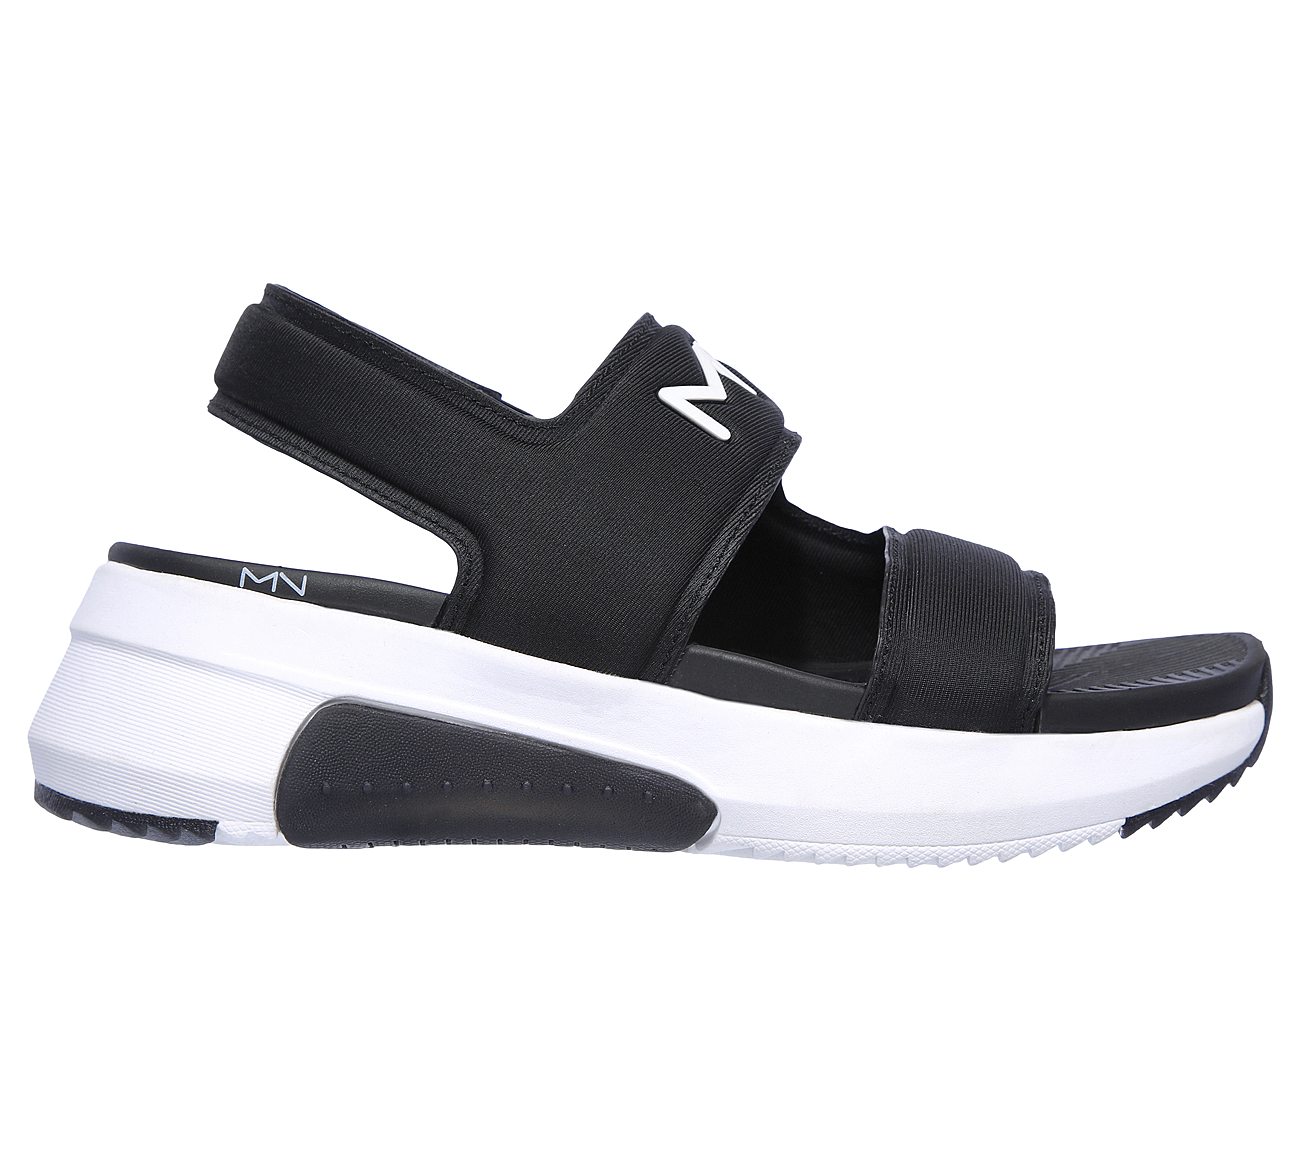 Buy SKECHERS Modern Jogger 2.0 - Delray Sandal Mark Nason Shoes